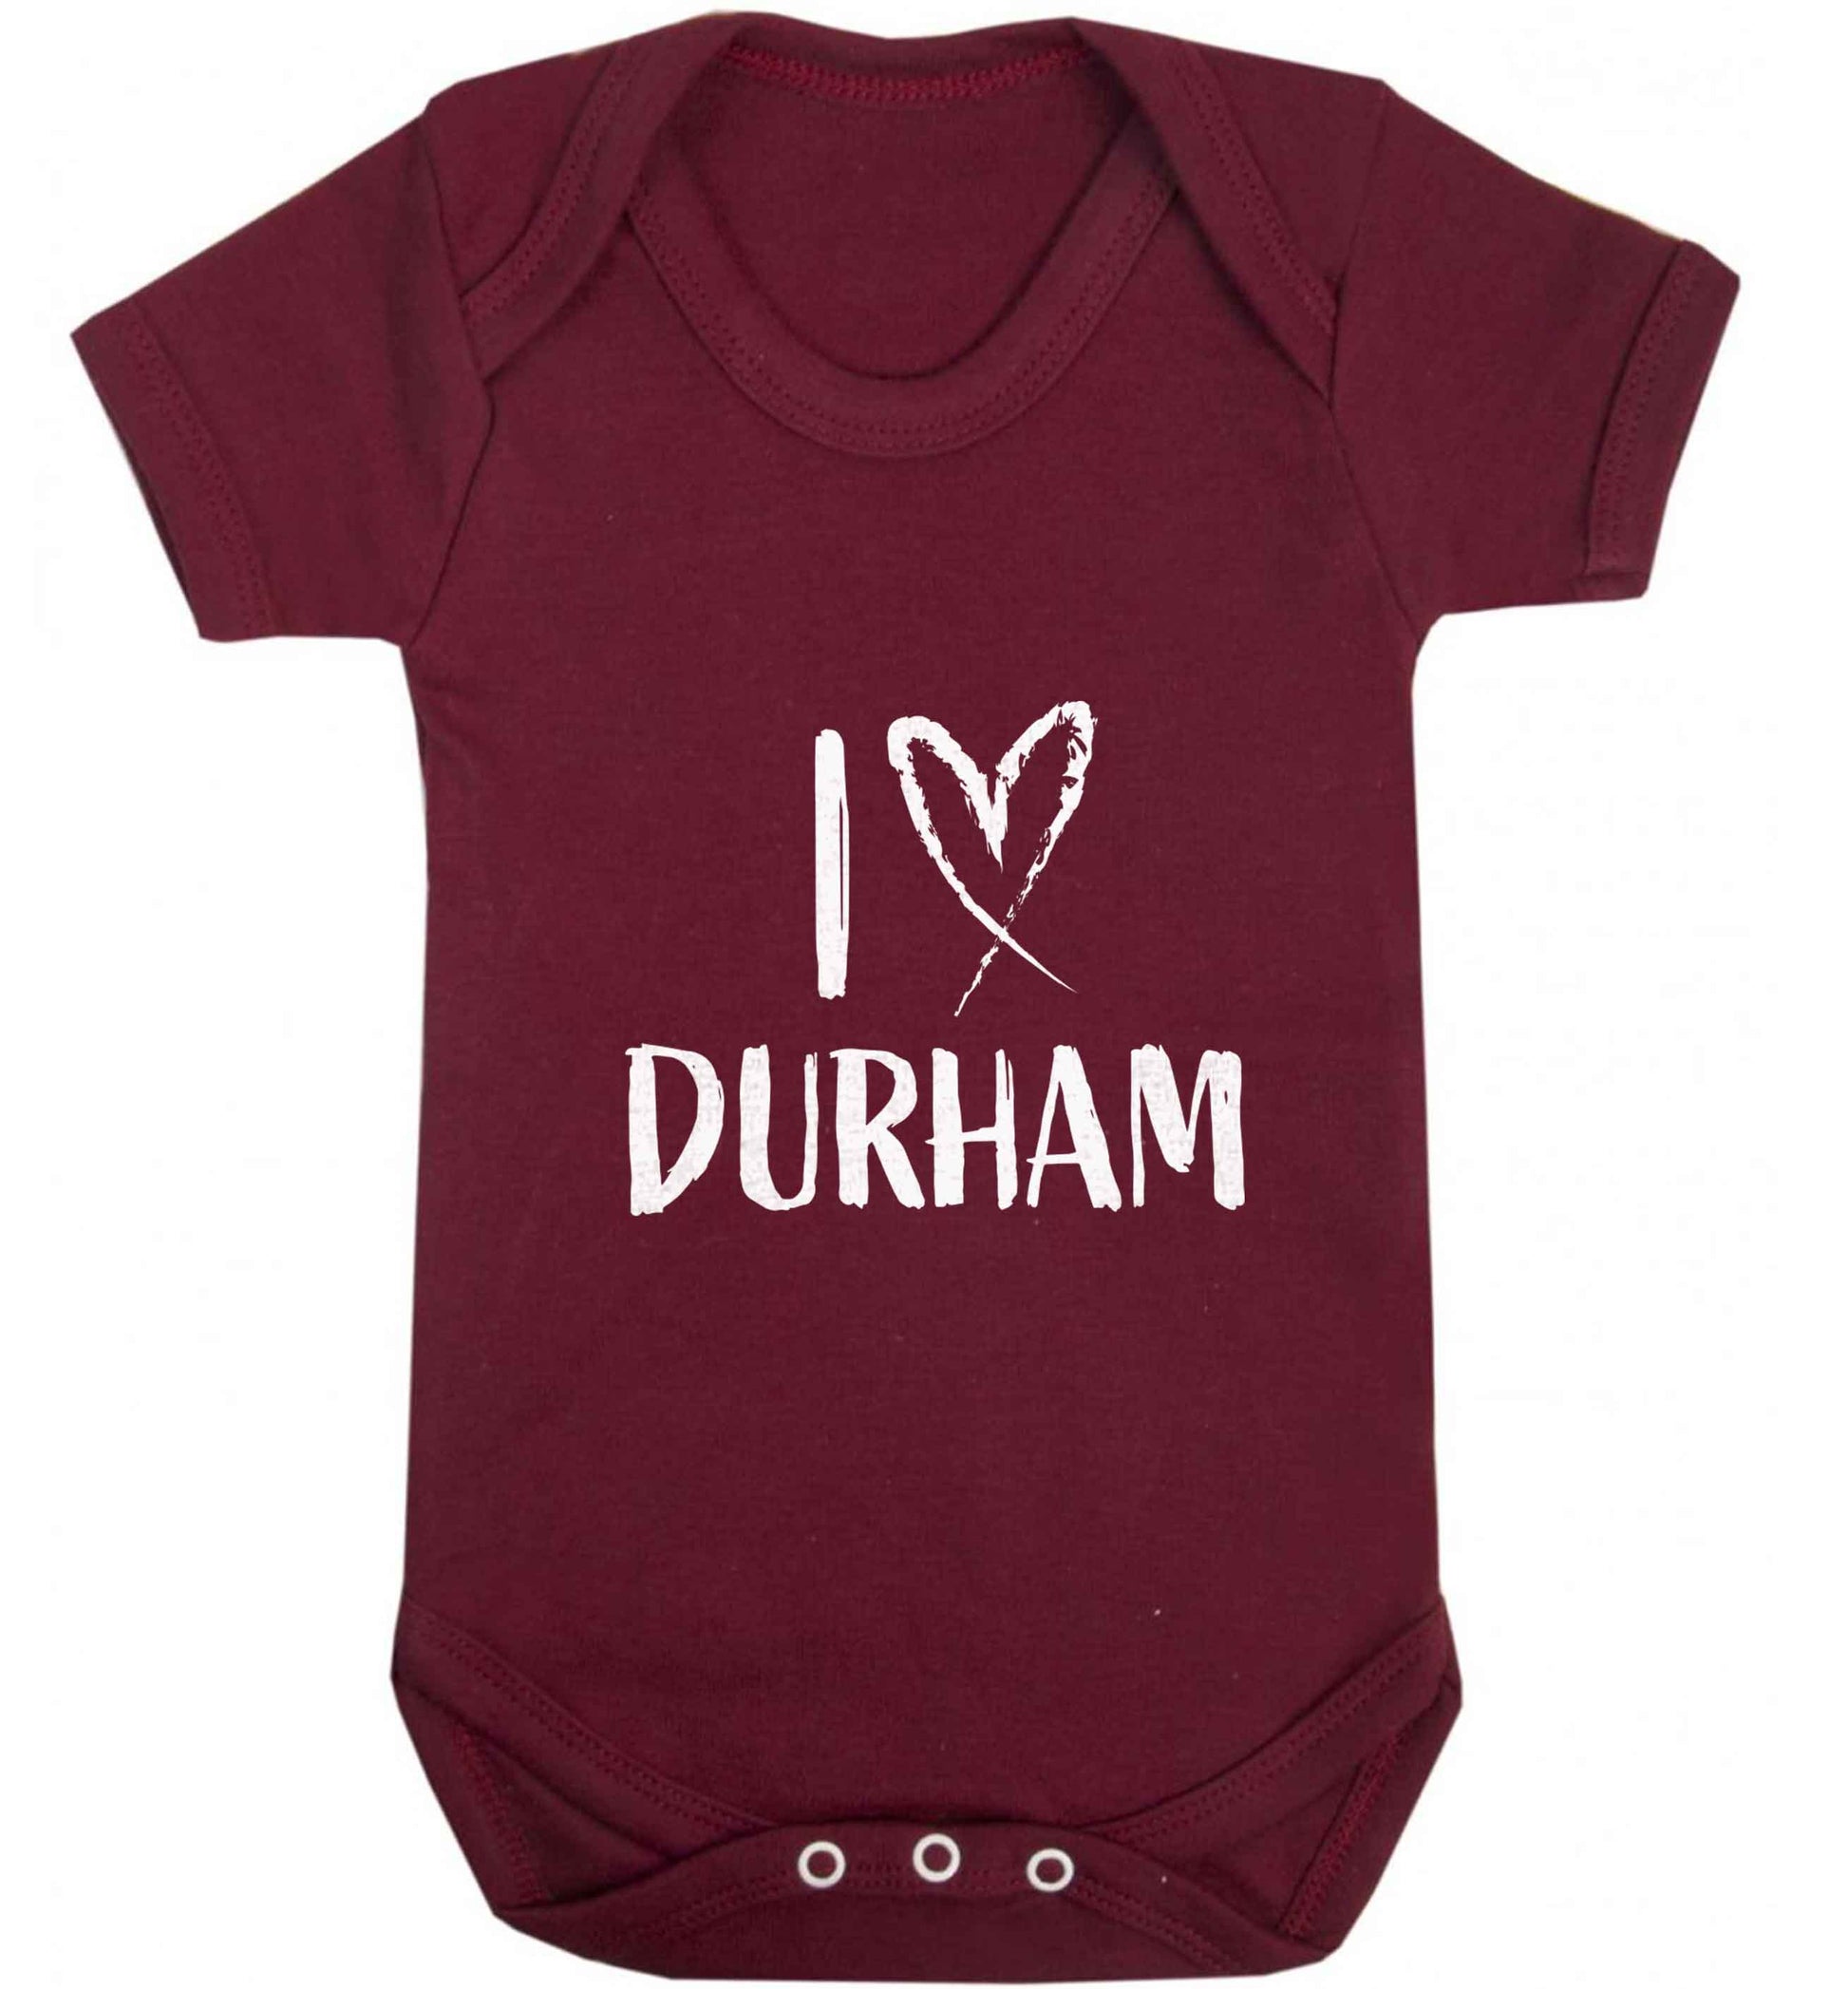 I love Durham baby vest maroon 18-24 months